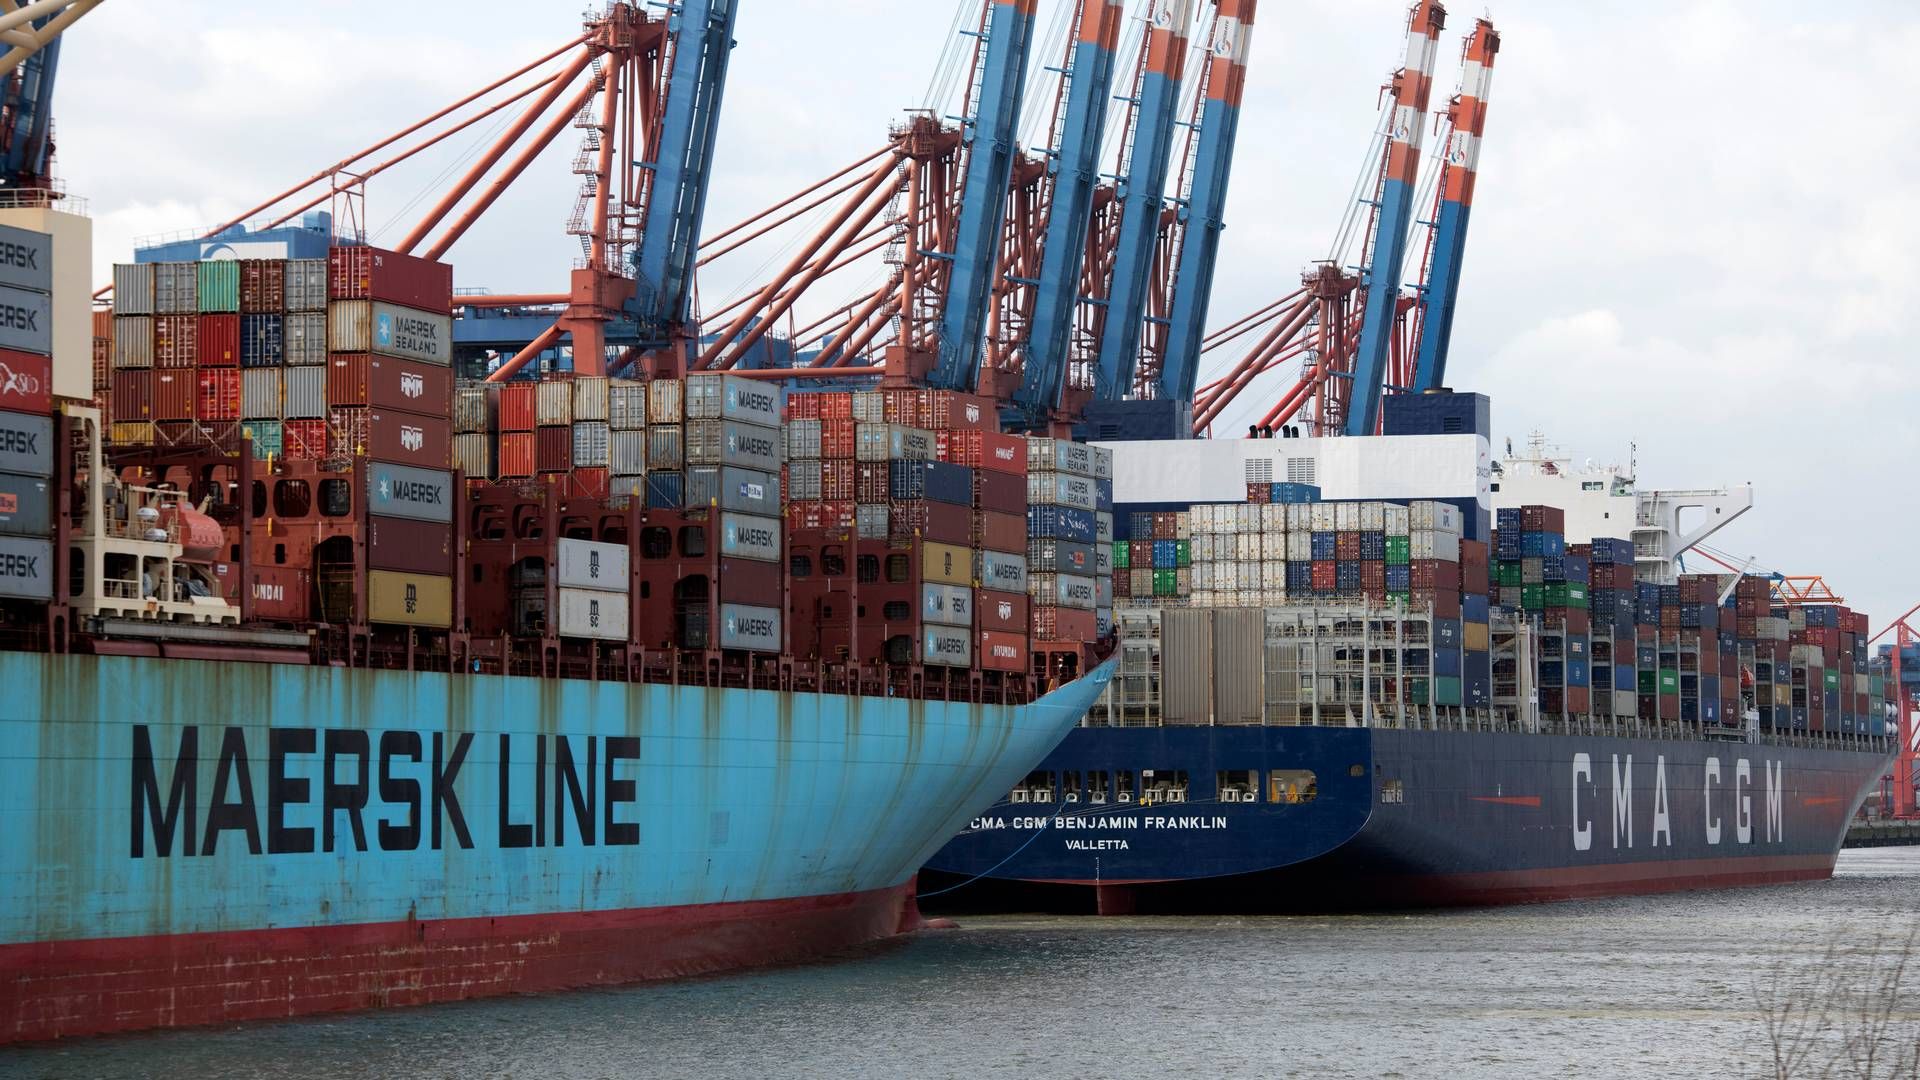 De store rederier har i årevis nydt godt af en undtagelse fra de europæiske konkurrenceregler, som betyder, at de både må dele oplysninger om kunder og plads på hinandens containerskibe. | Foto: Malte Ossowski/AP/Ritzau Scanpix